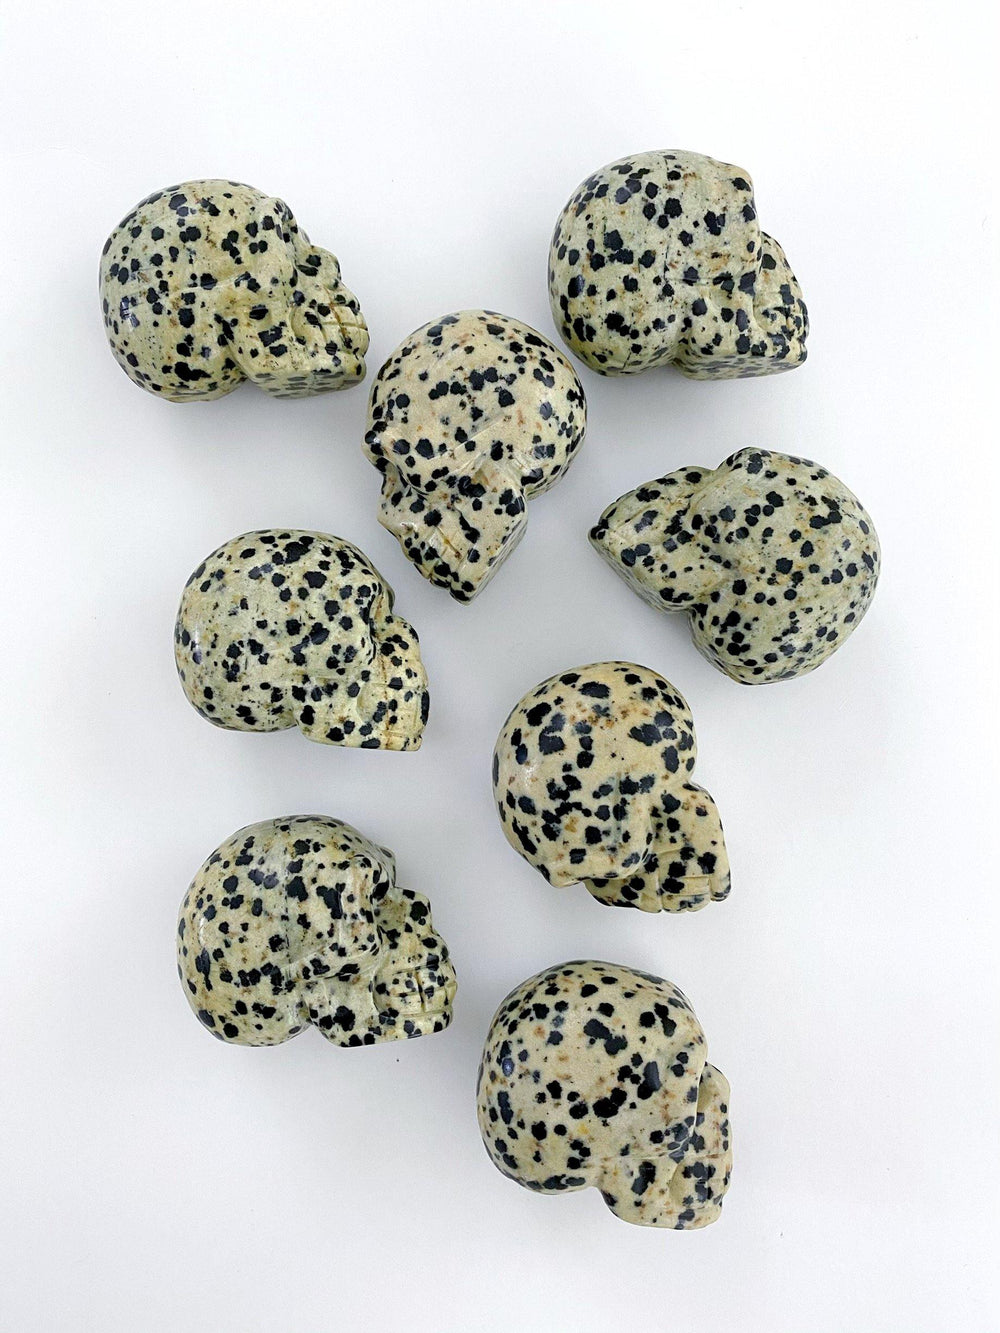 Dalmatian Jasper Carved Skulls - Uncommon Rocks